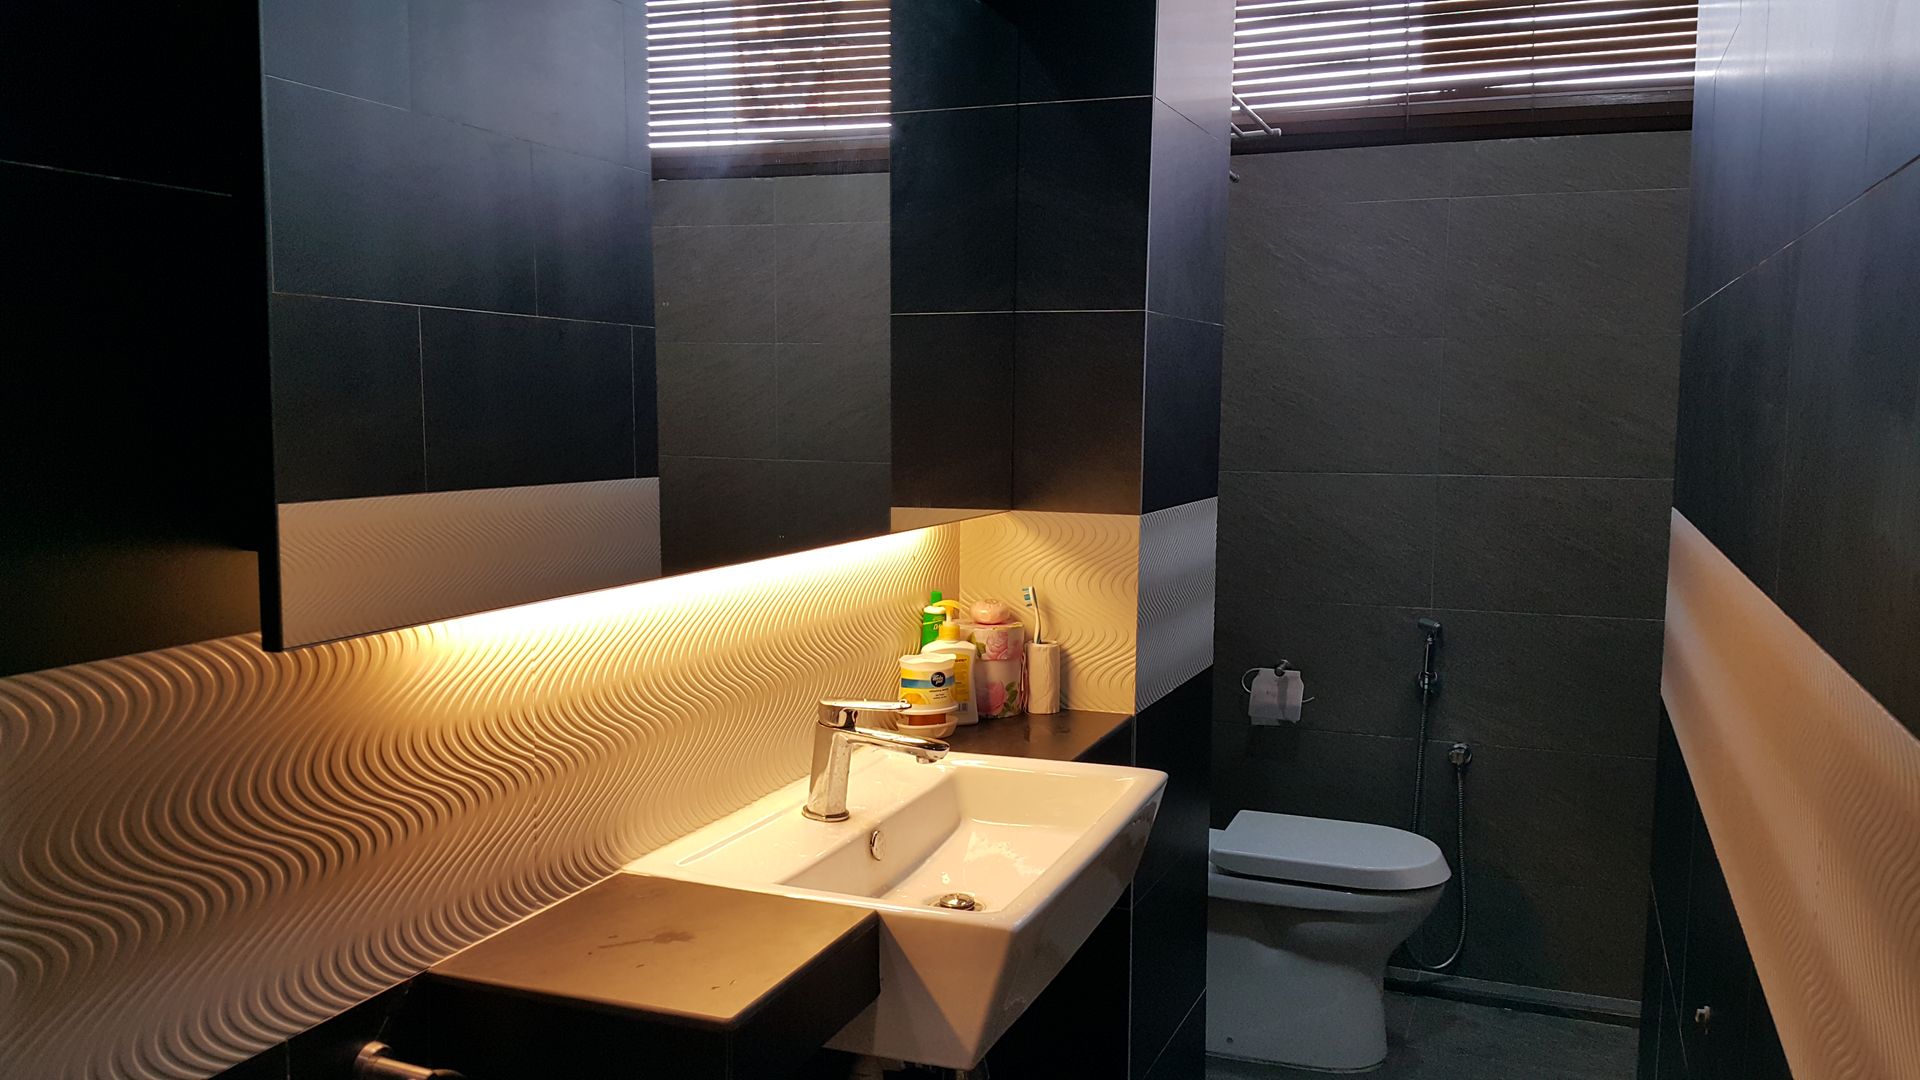 Soho Alecc Interior Design Modern style bathrooms renovation